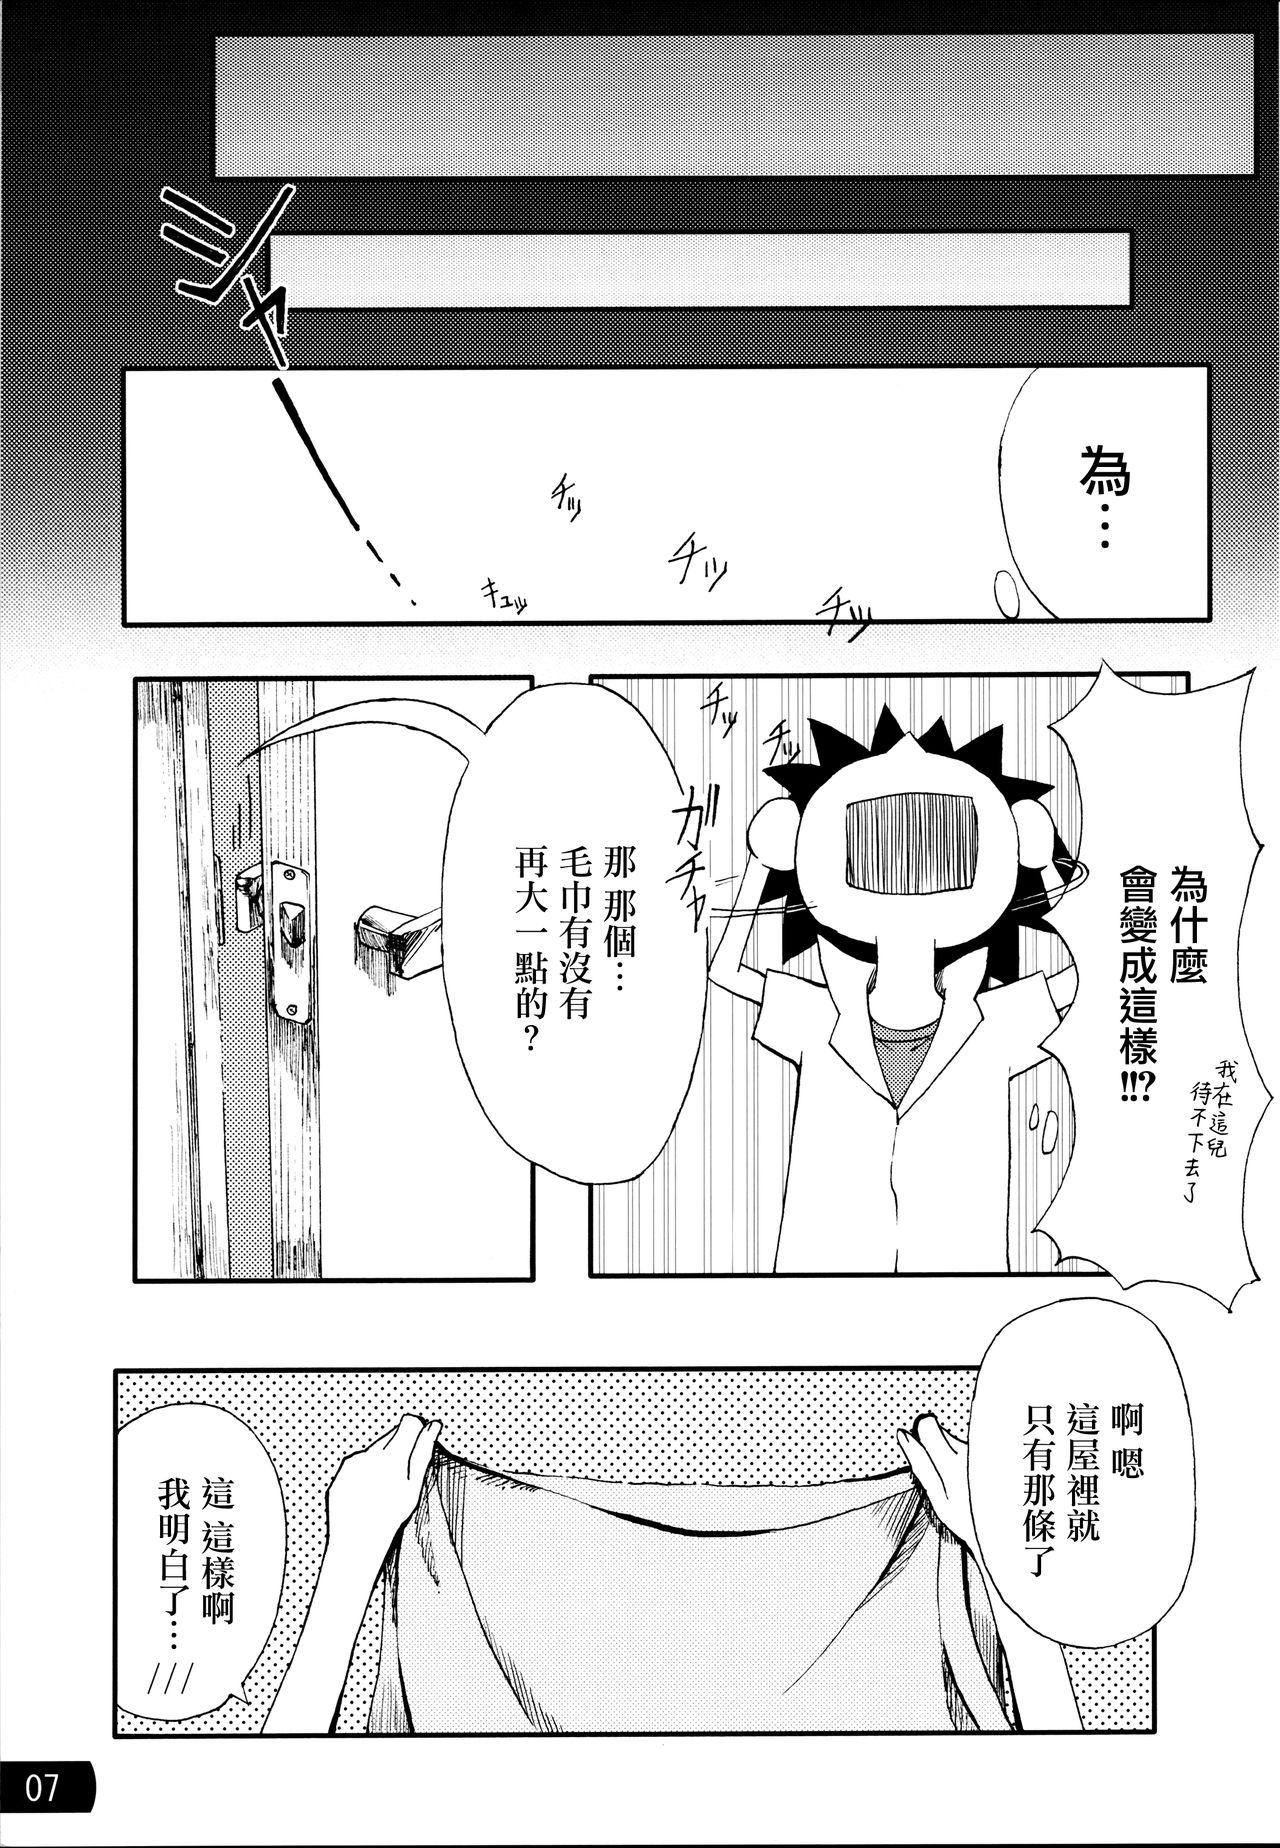 Close Toaru mousou no chou denji hon 02 - Toaru kagaku no railgun Bucetuda - Page 6